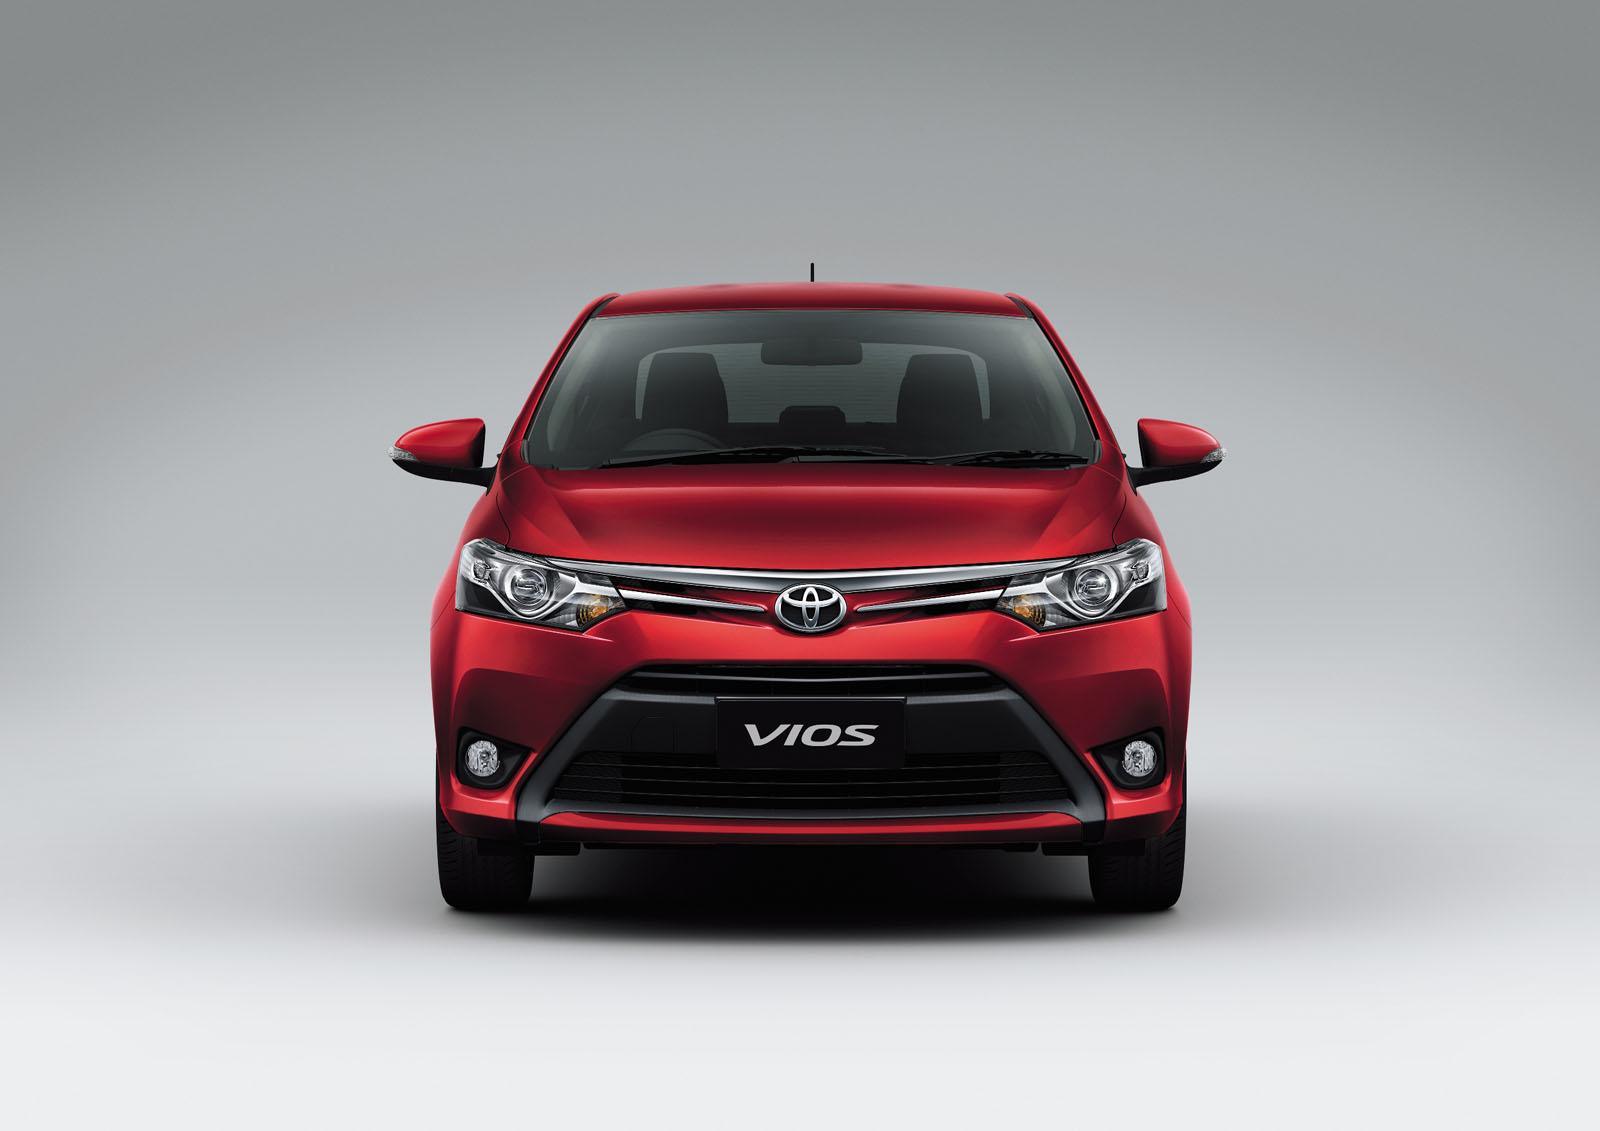  Mobil  Toyota VIOS  2013 Ternyata Keren Juga